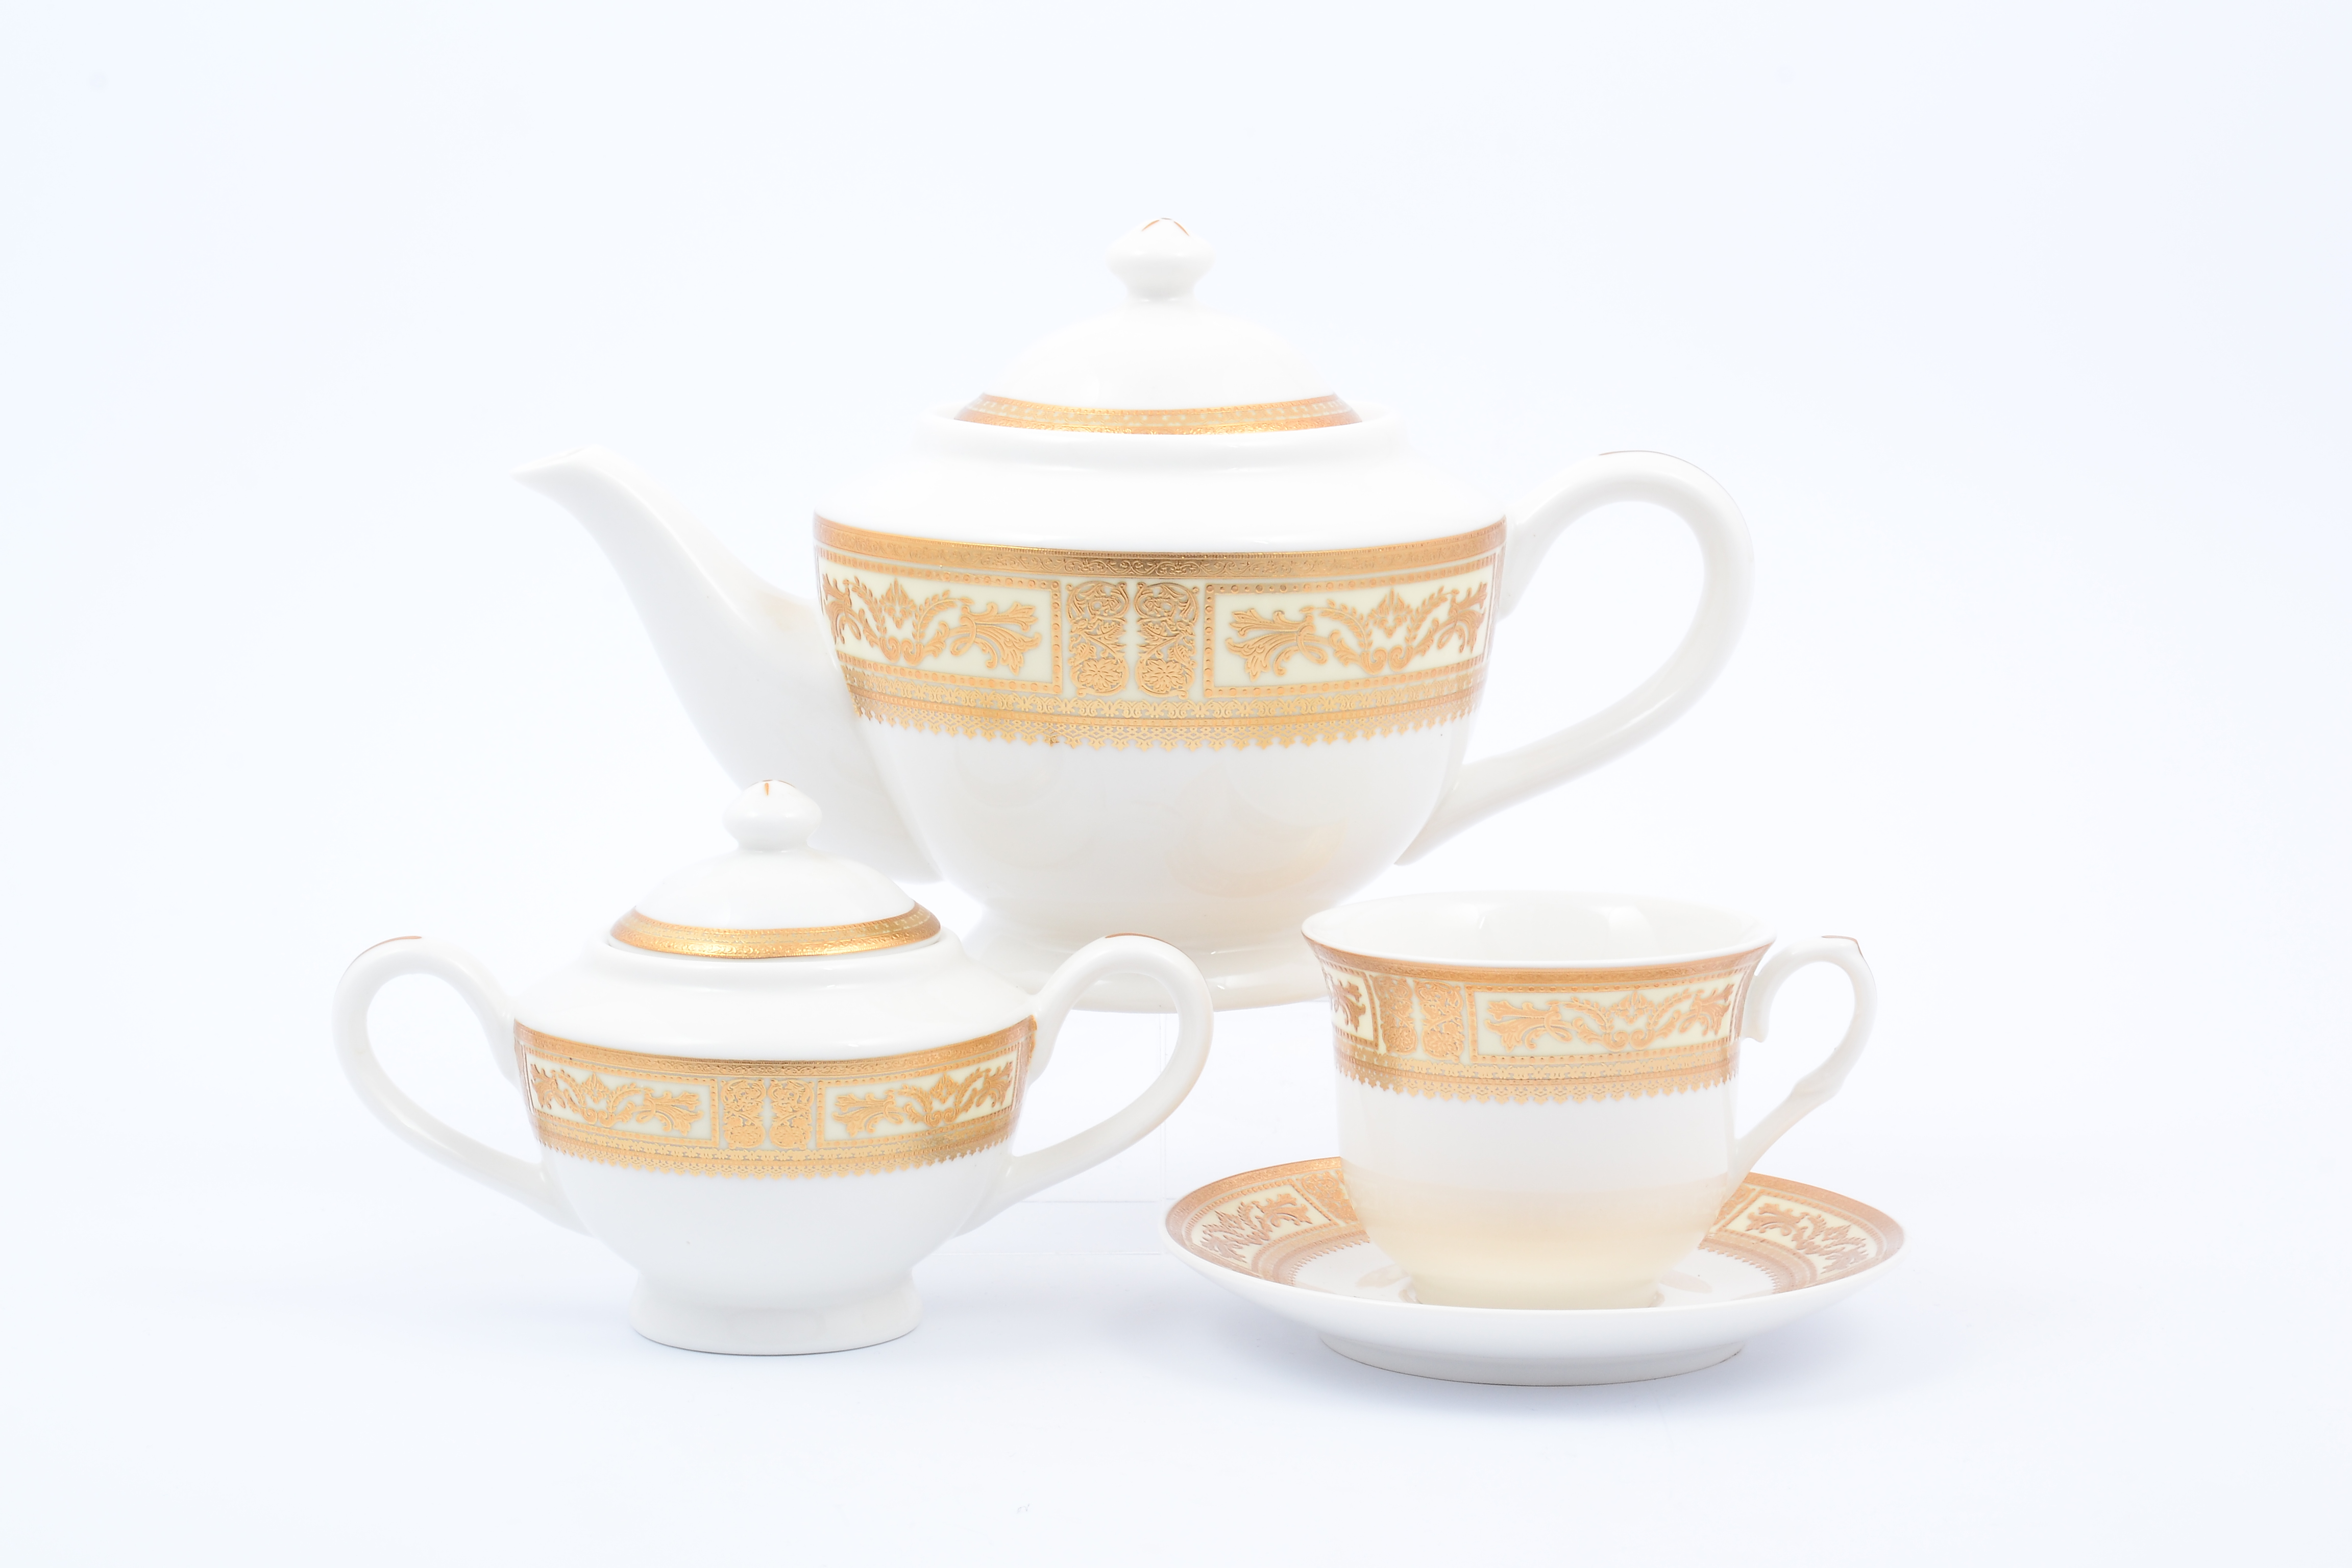 Сервизы royal. Сервиз Royal Classics (Роял Классик). Чайный сервиз Роял коллекшн. Royal Porcelain чайный сервиз. Столовый сервиз Royal Classics England collection.